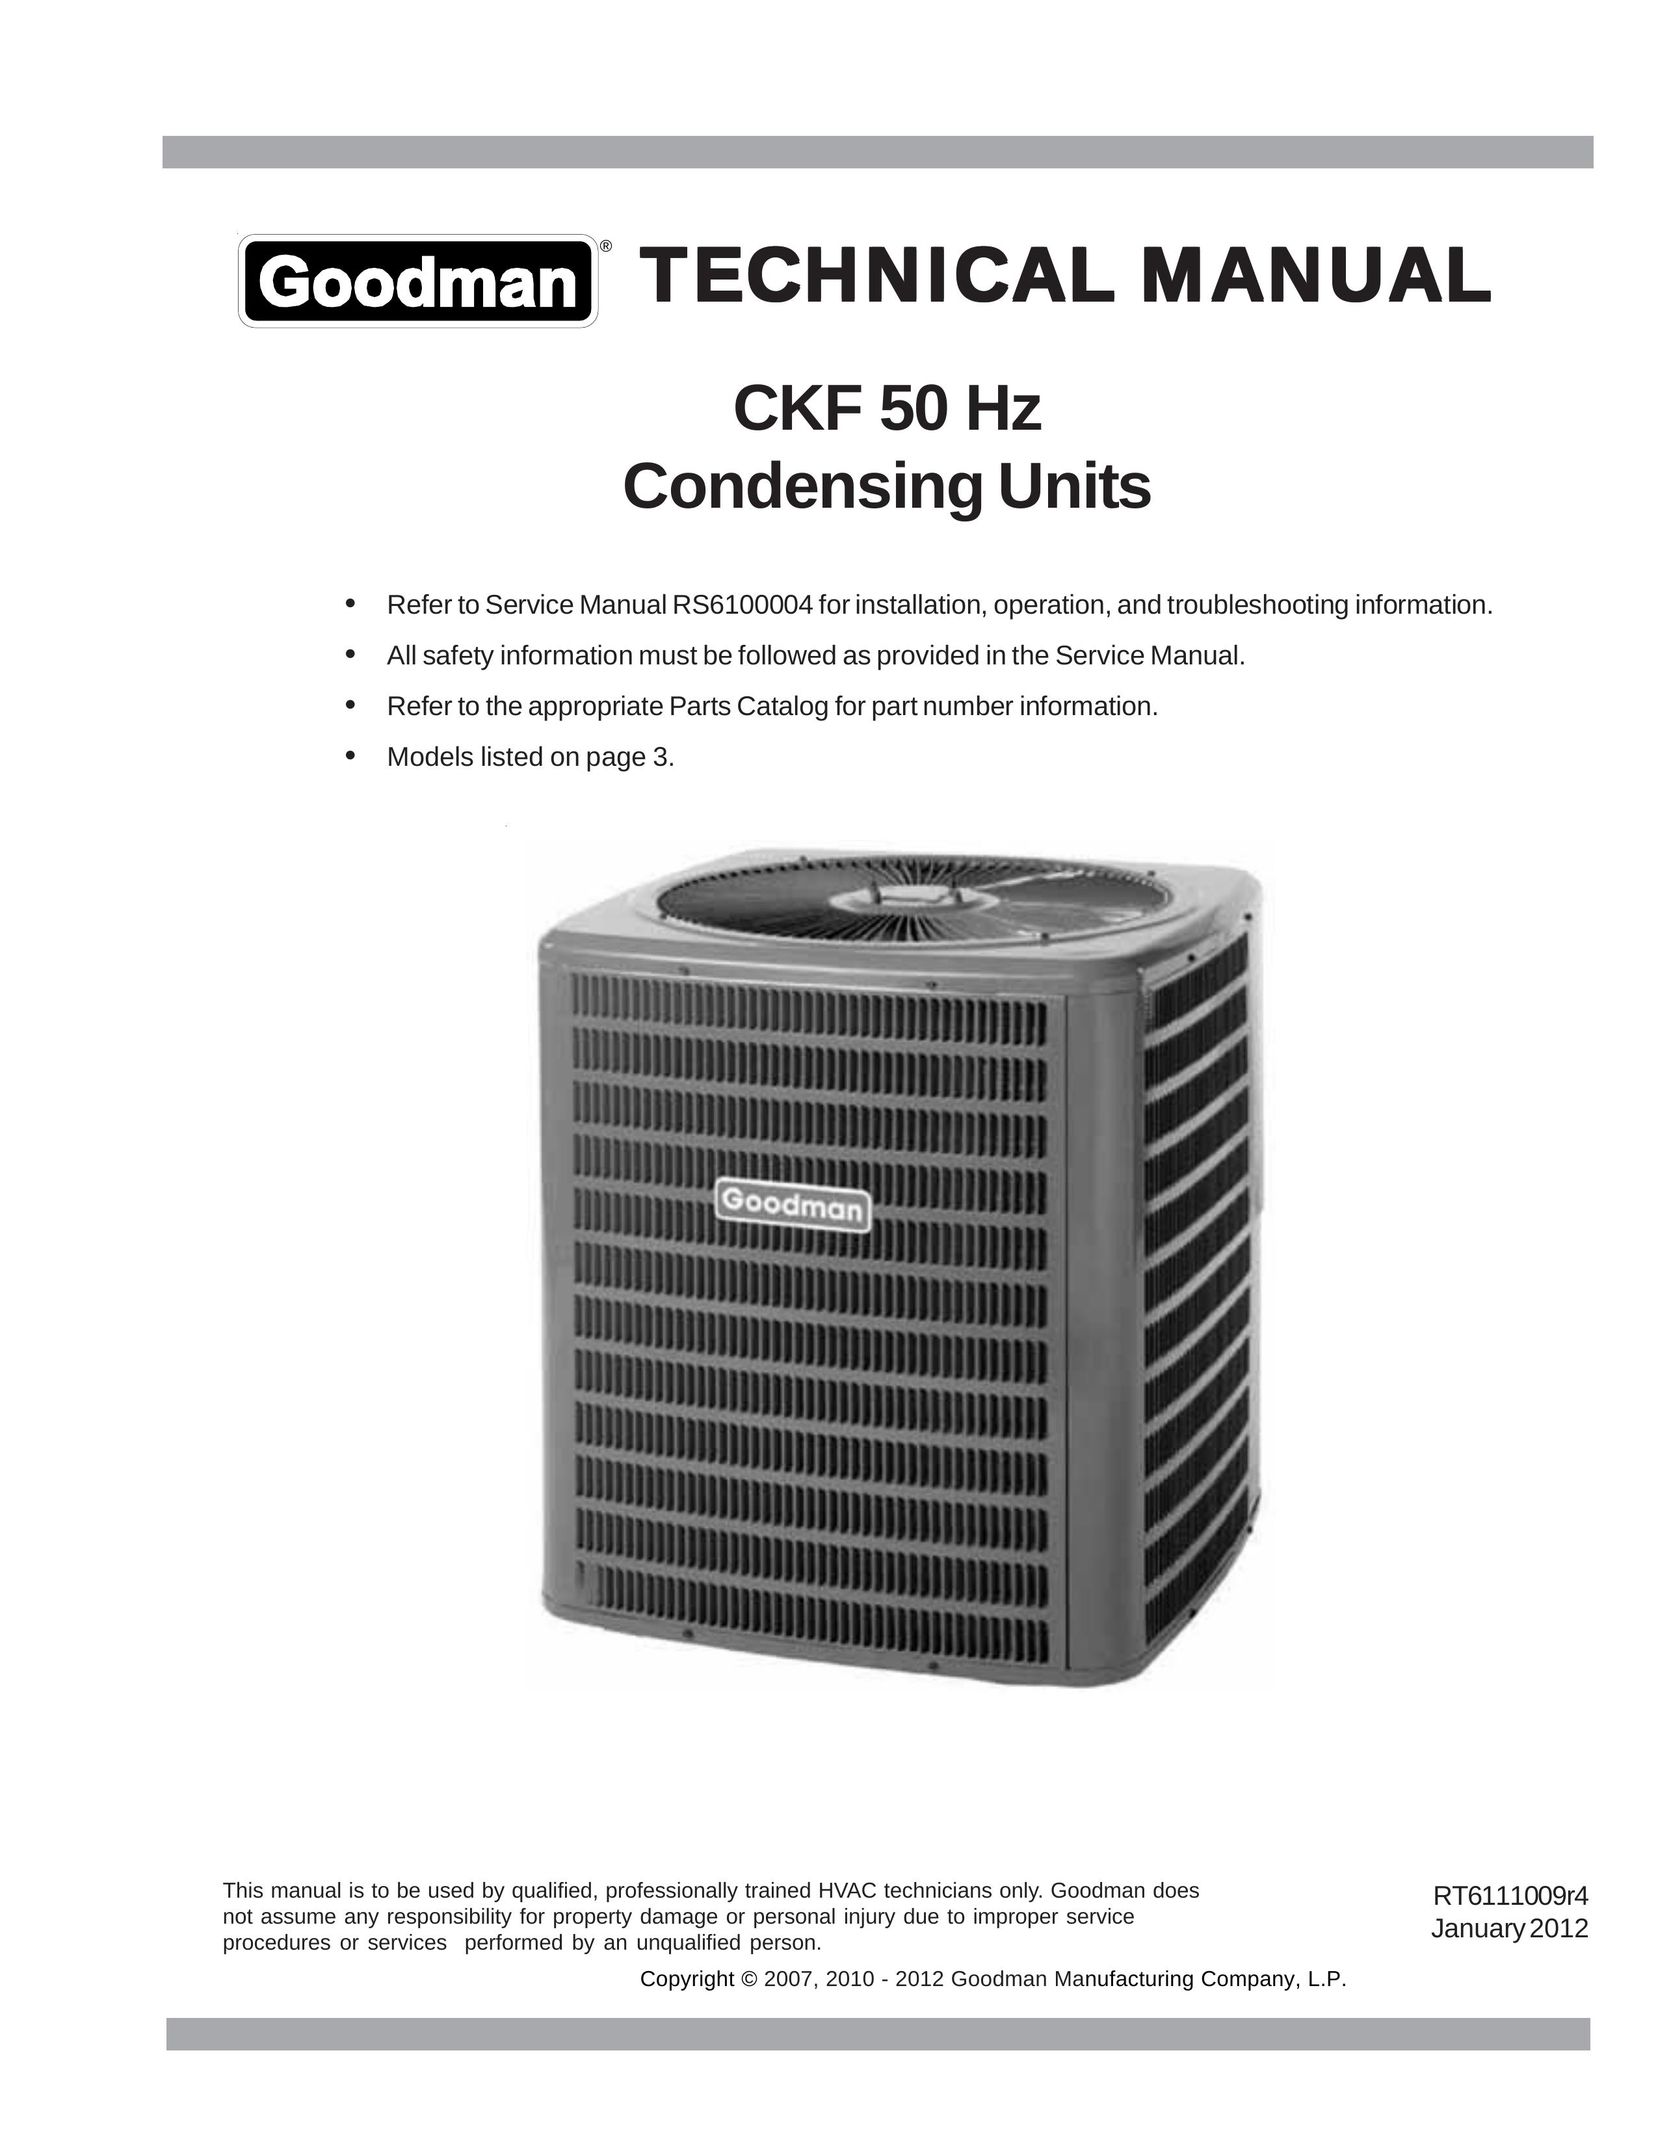 Goodman Mfg CKF50Hz Air Conditioner User Manual